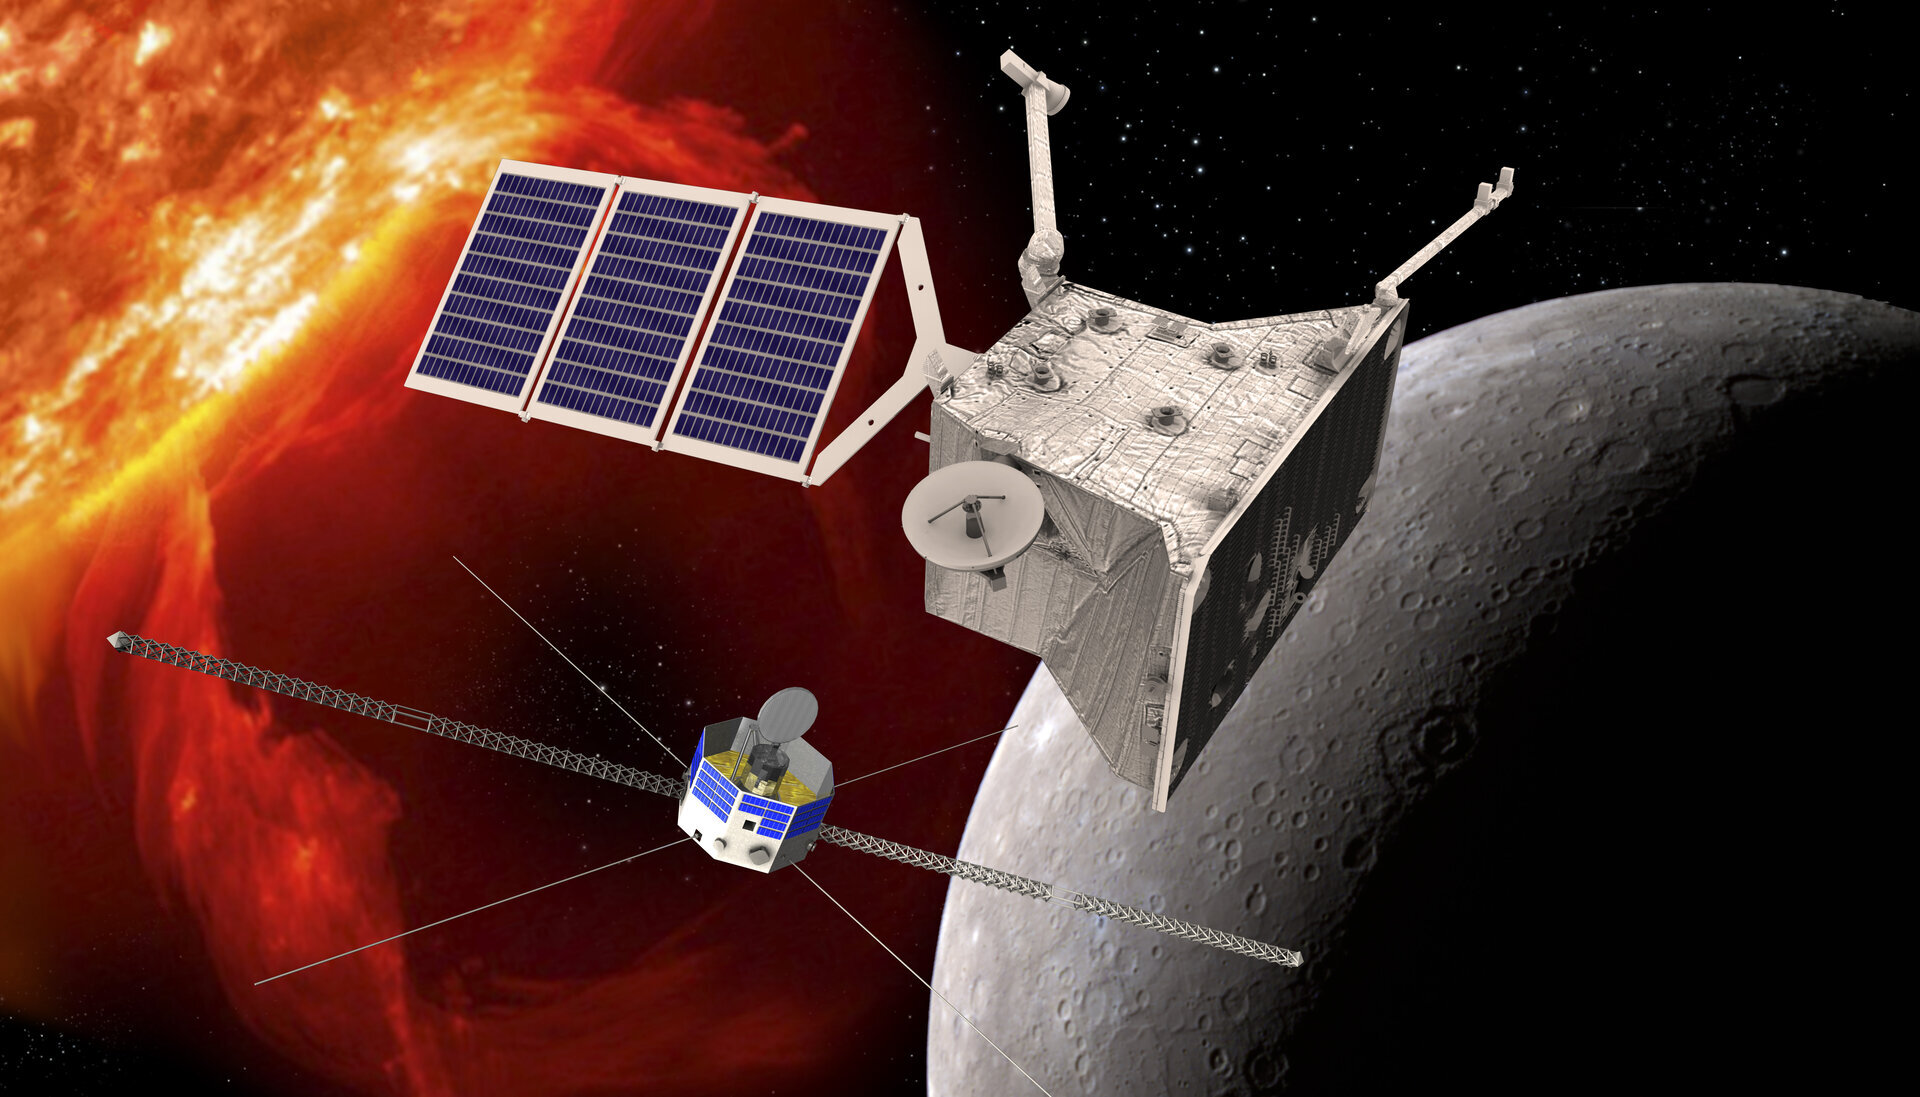 ЕКА сообщило о сбое работы летящего к Меркурию зонда BepiColombo